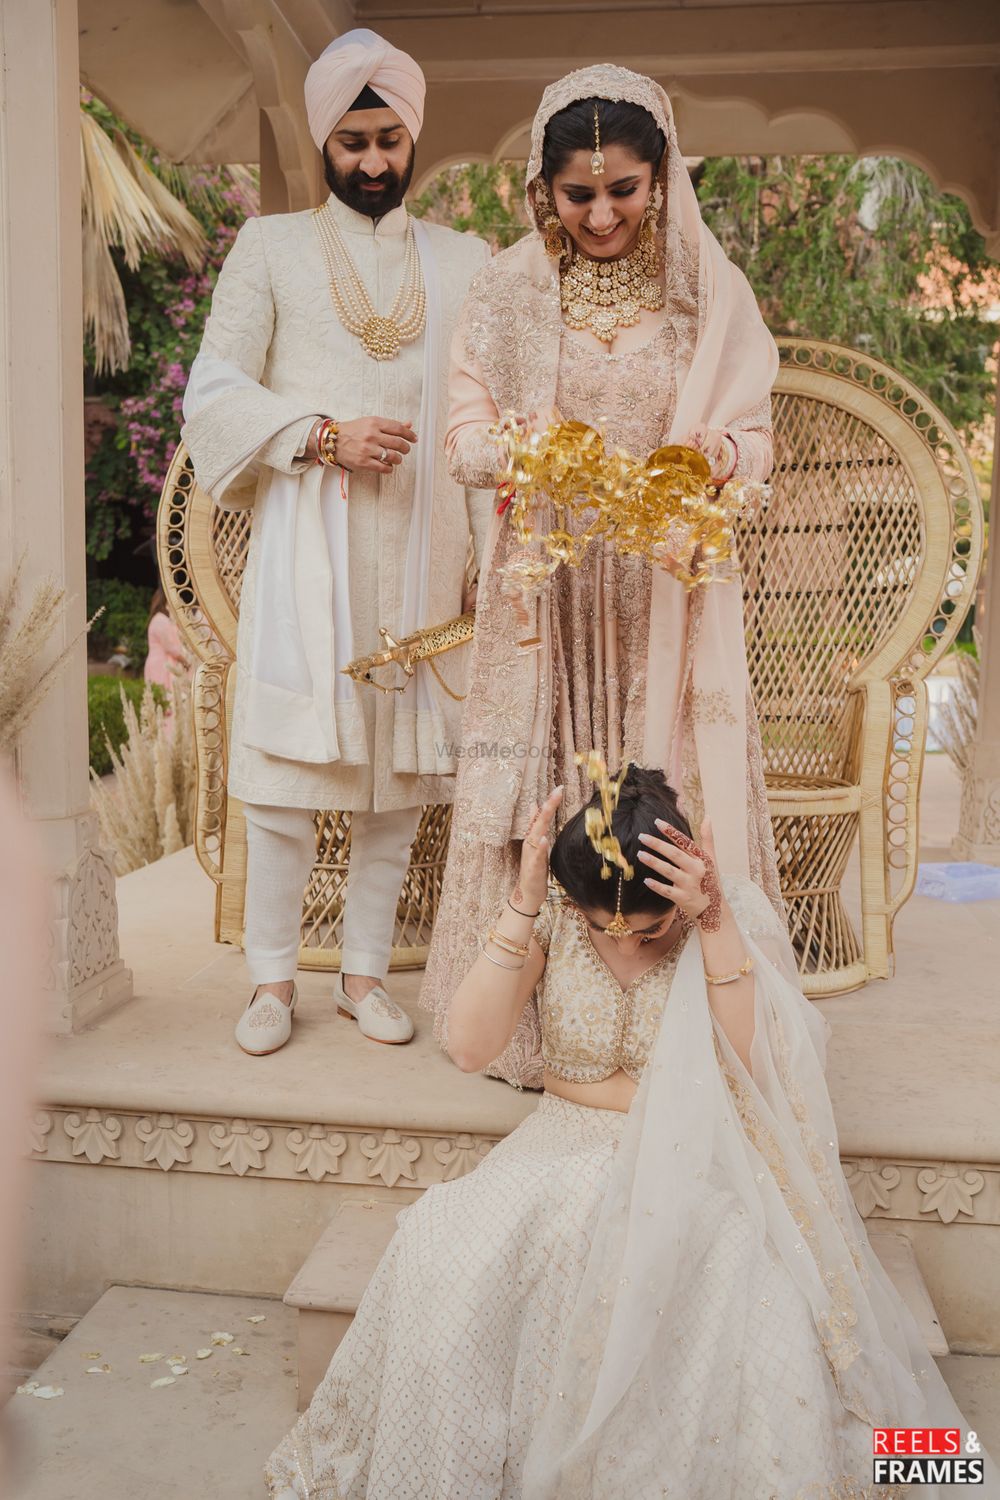 Photo from Tanushka and Jaskaran Wedding